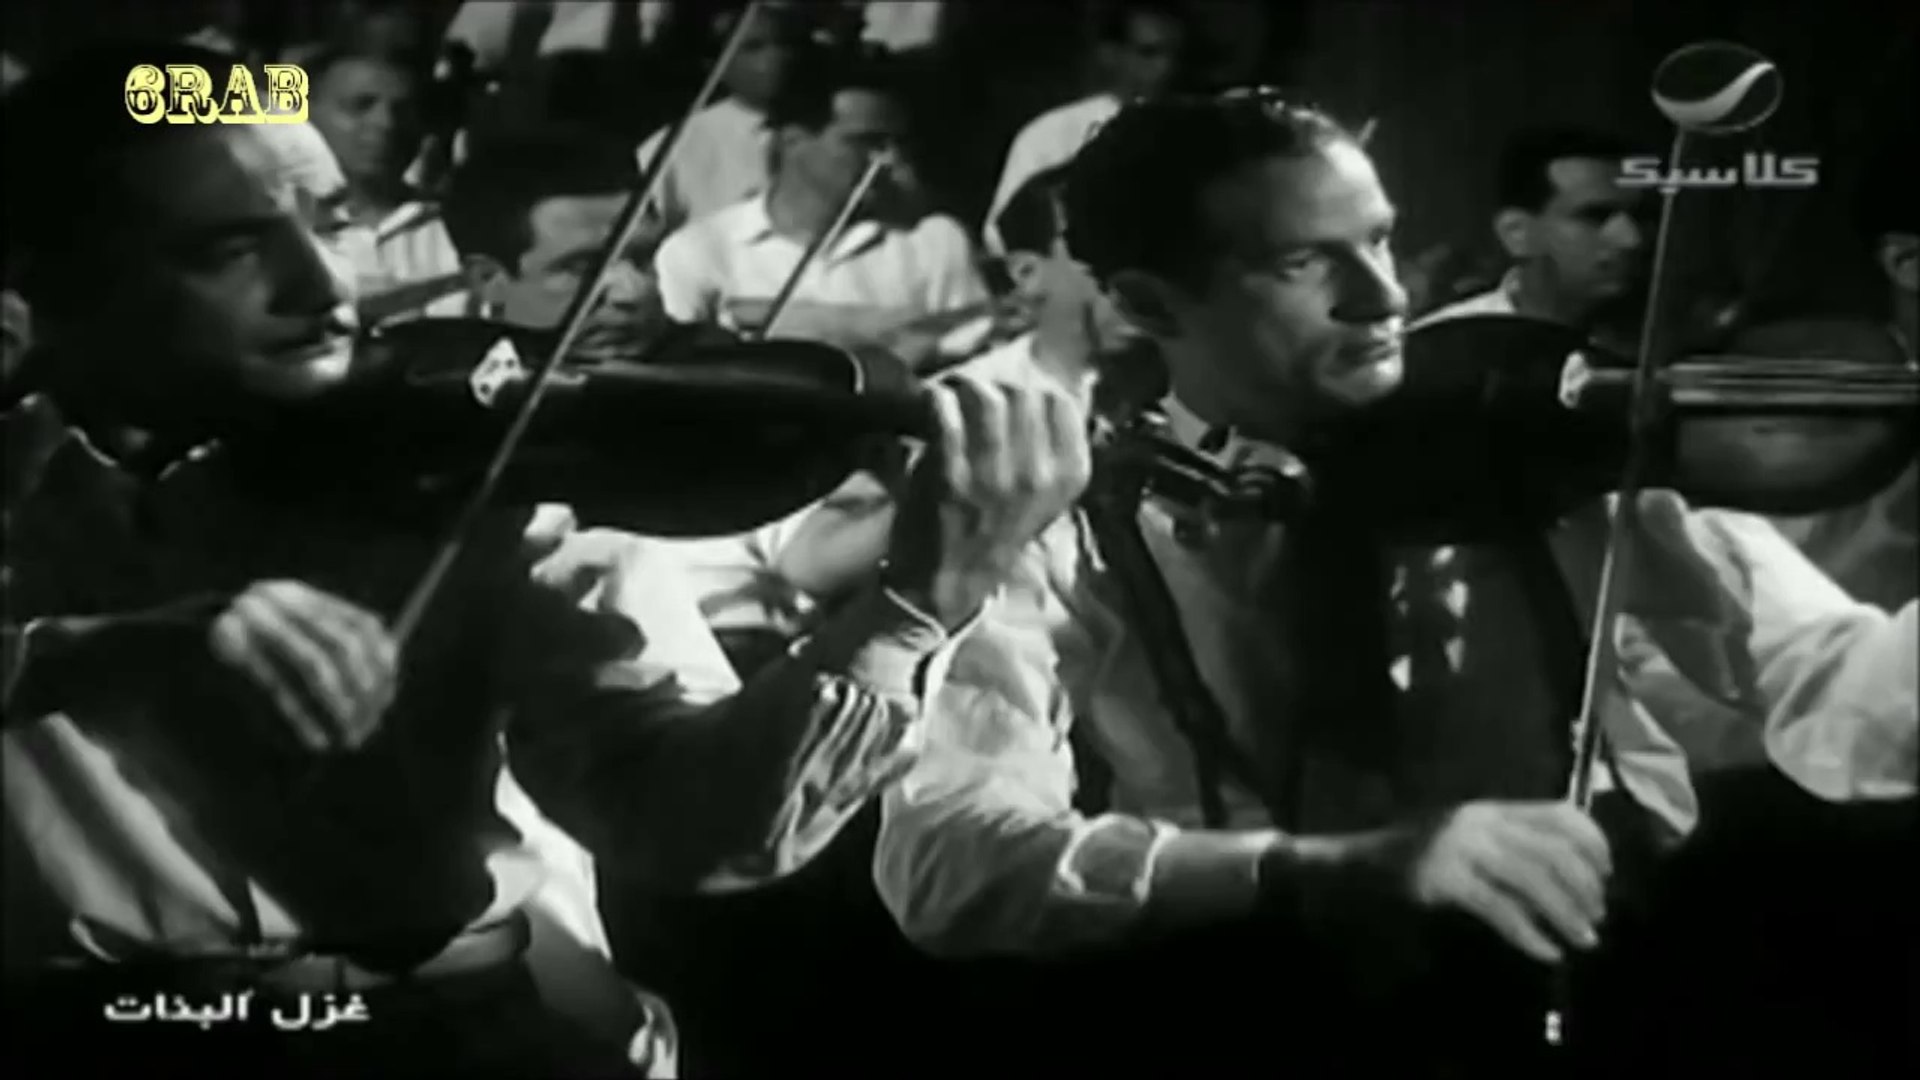 محمد عبدالوهاب - عاشق الروح - فيلم غزل البنات عام 1949م - video Dailymotion